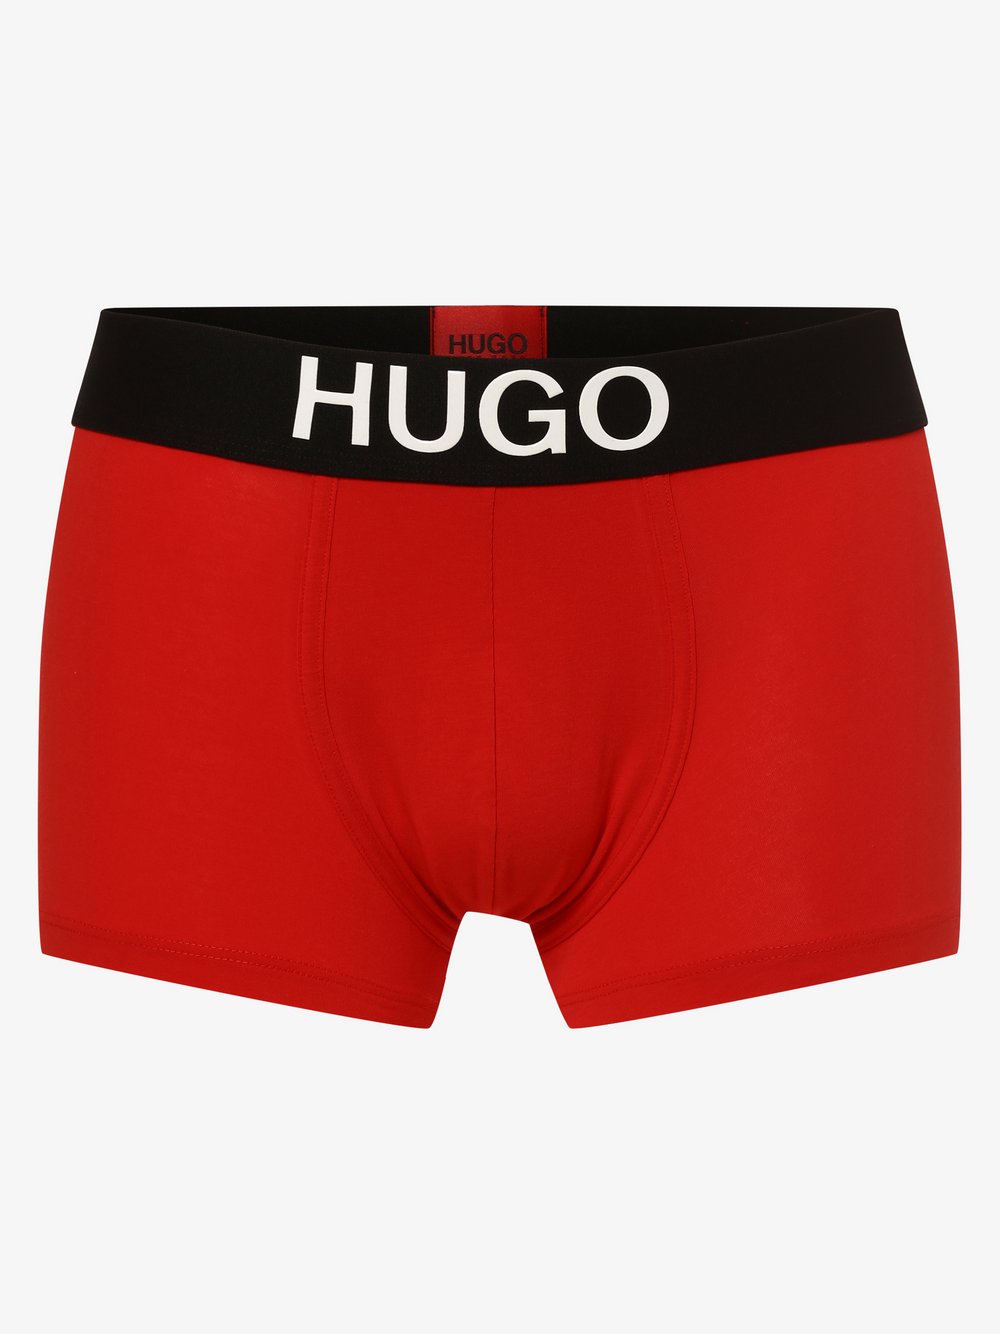 HUGO - Obcisłe bokserki męskie, czerwony